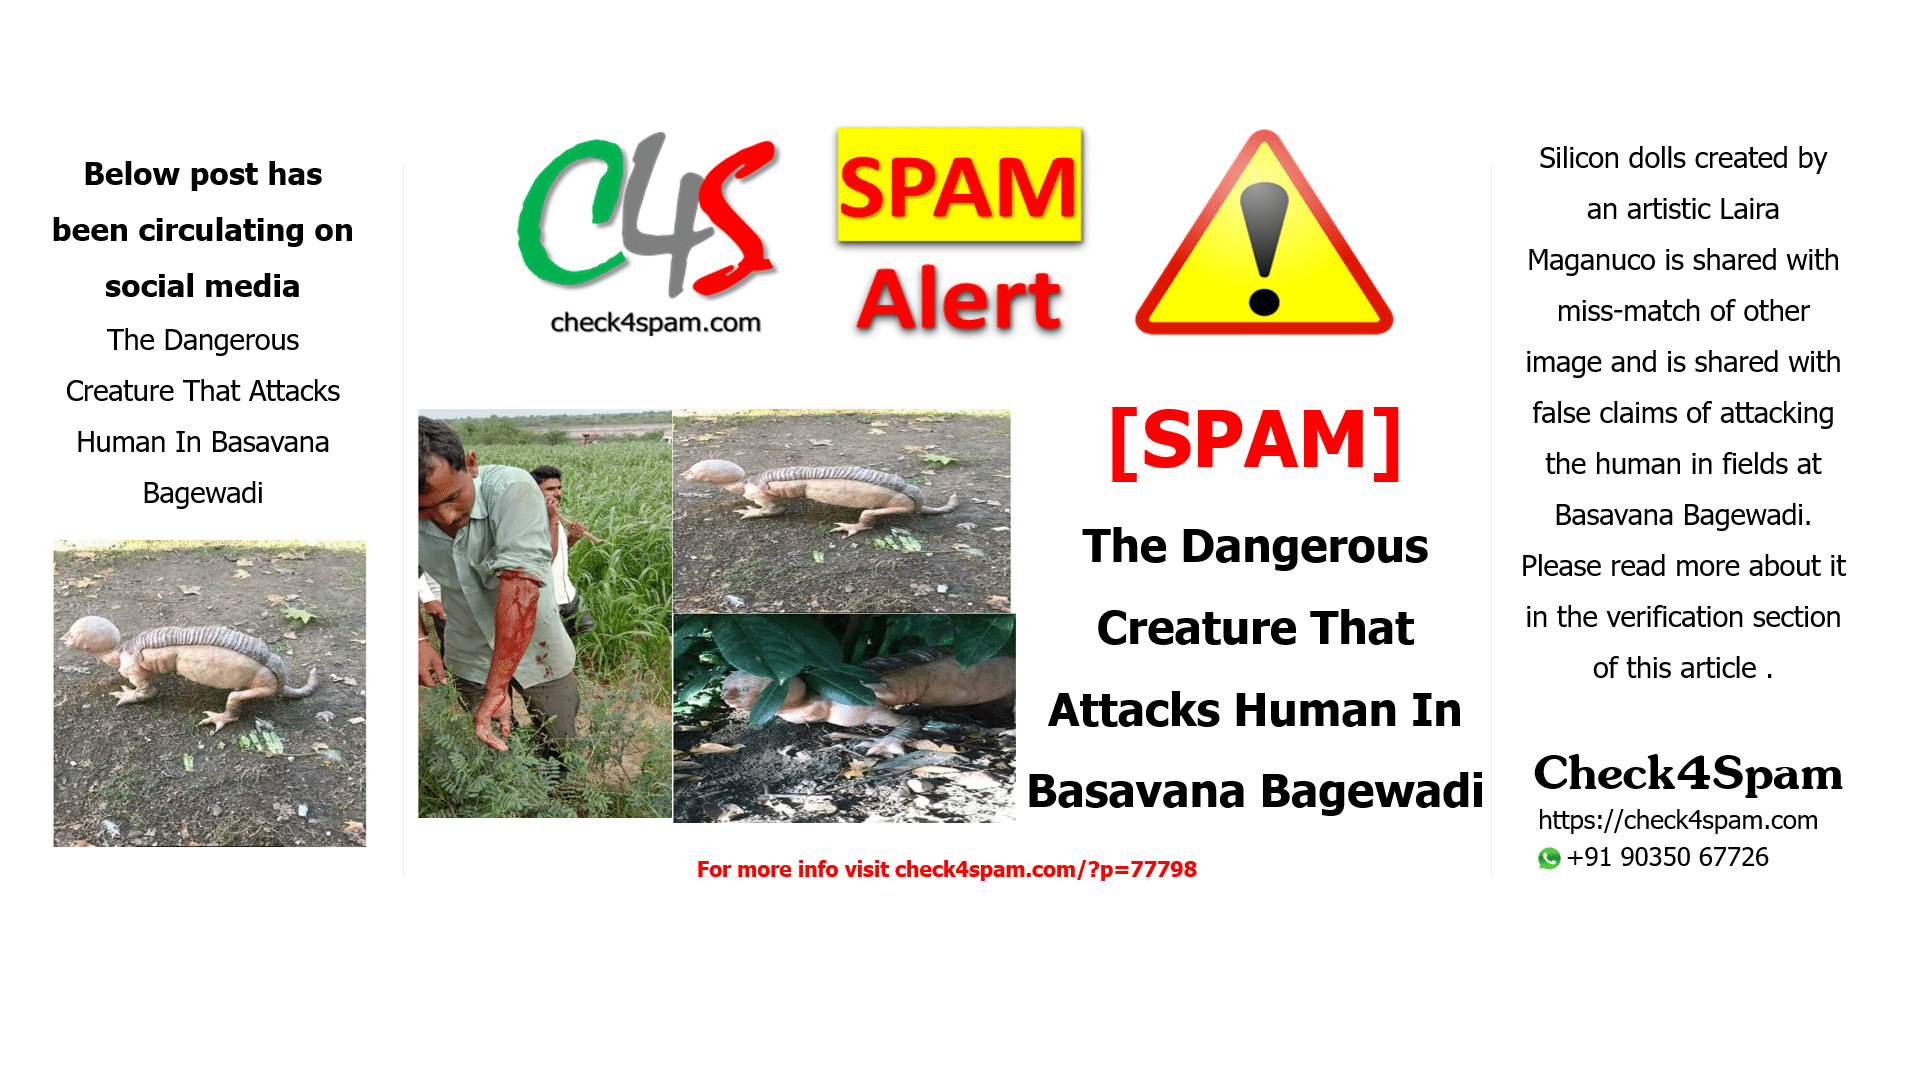 The Dangerous Creature That Attacks Human In Basavana Bagewadi